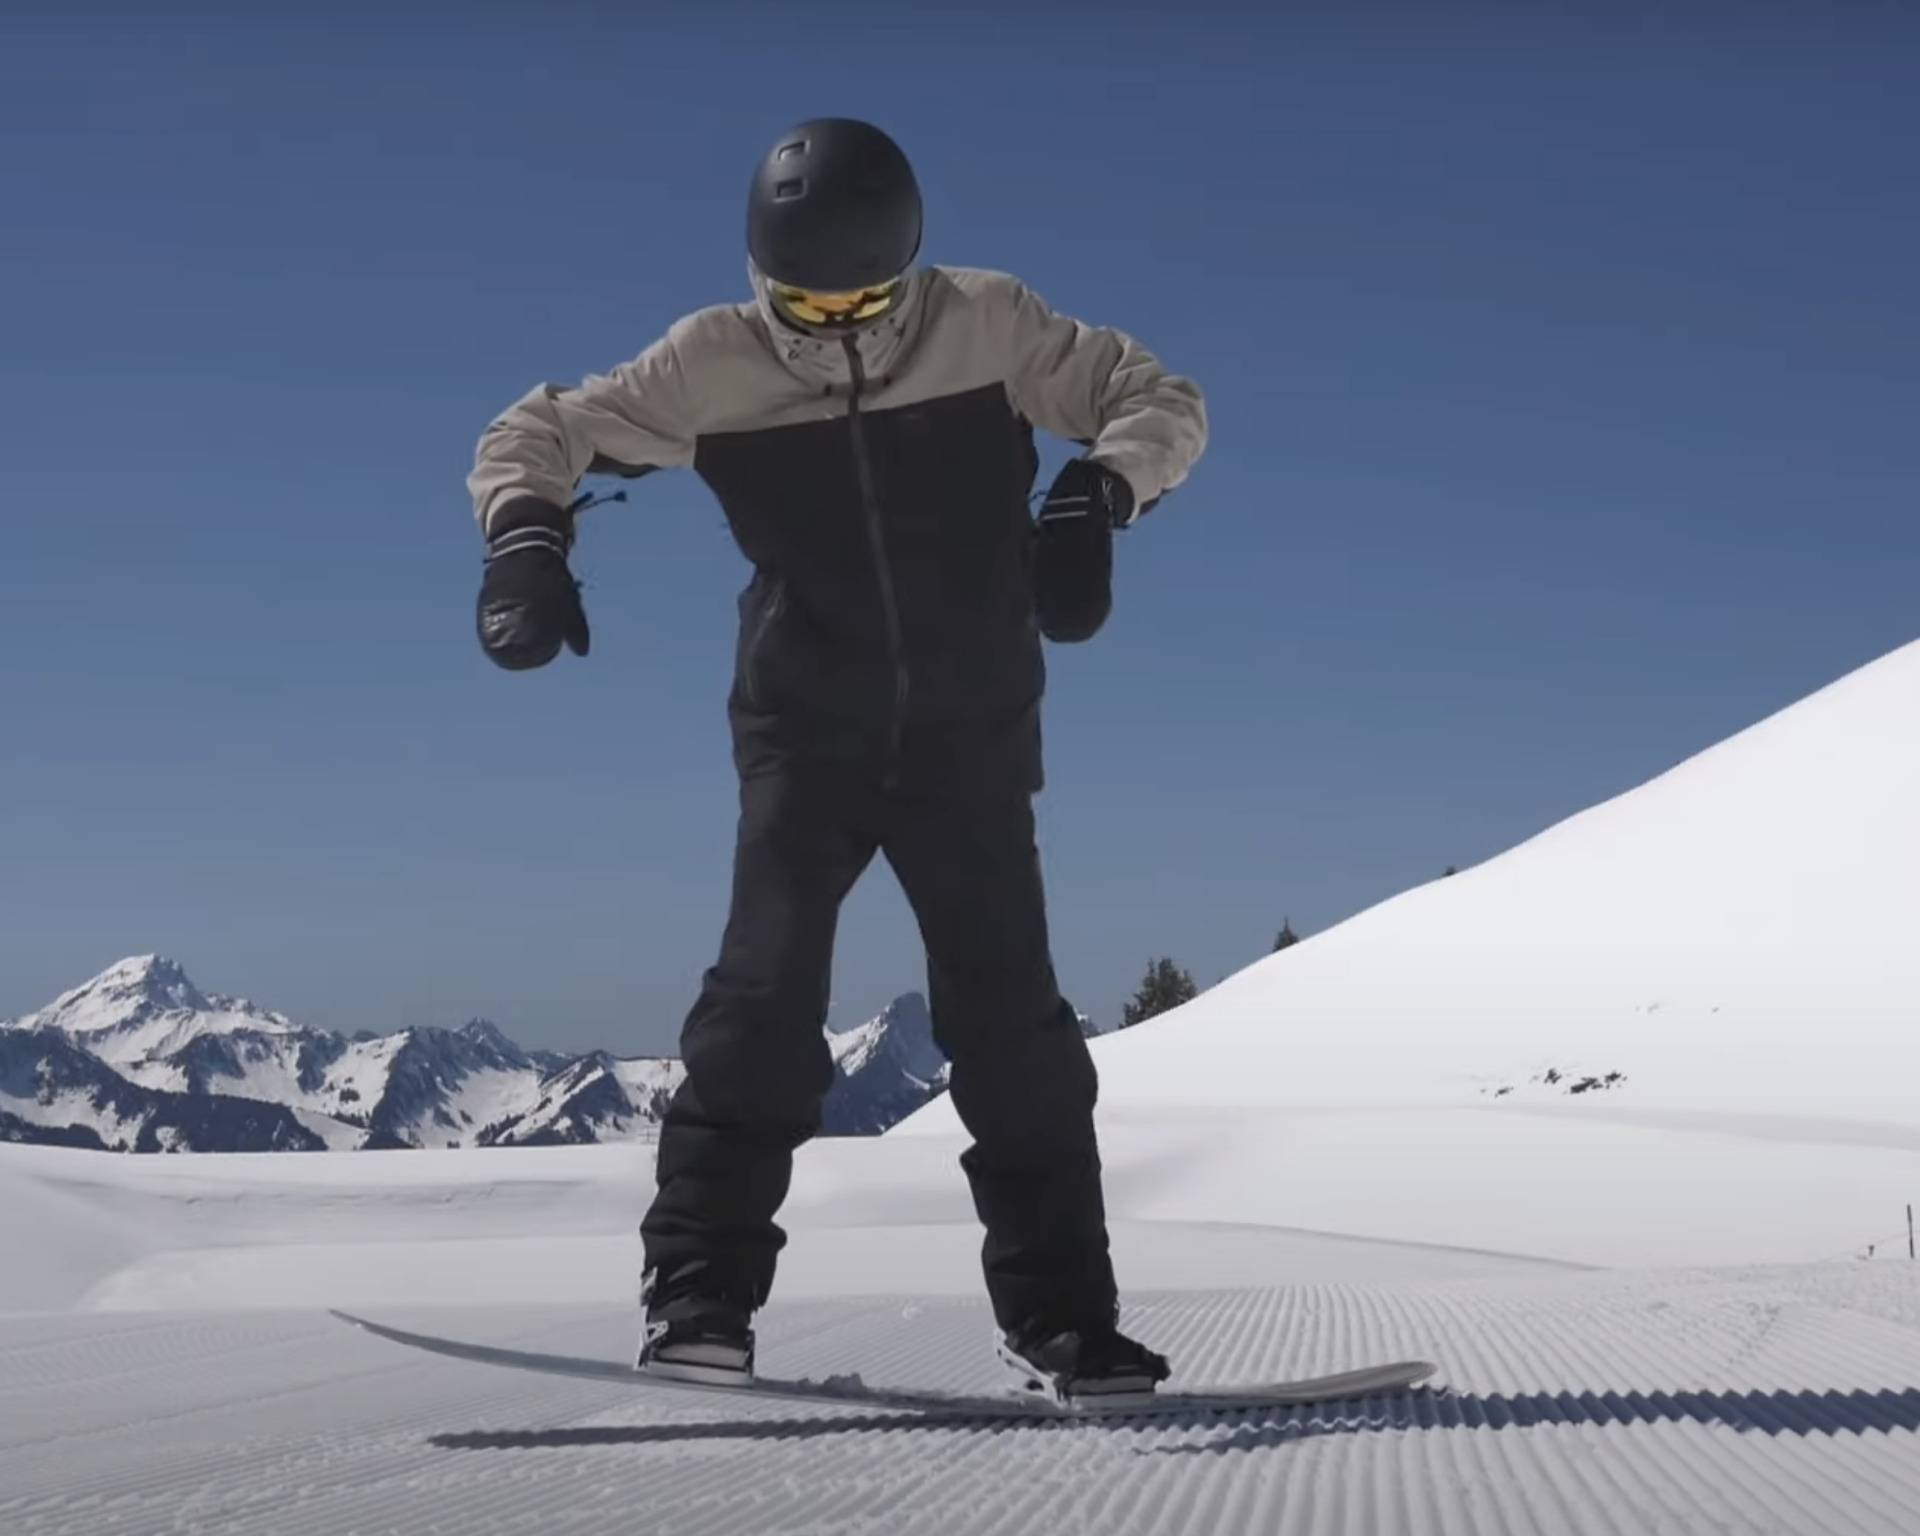 Comment faire un butter en snowboard ?